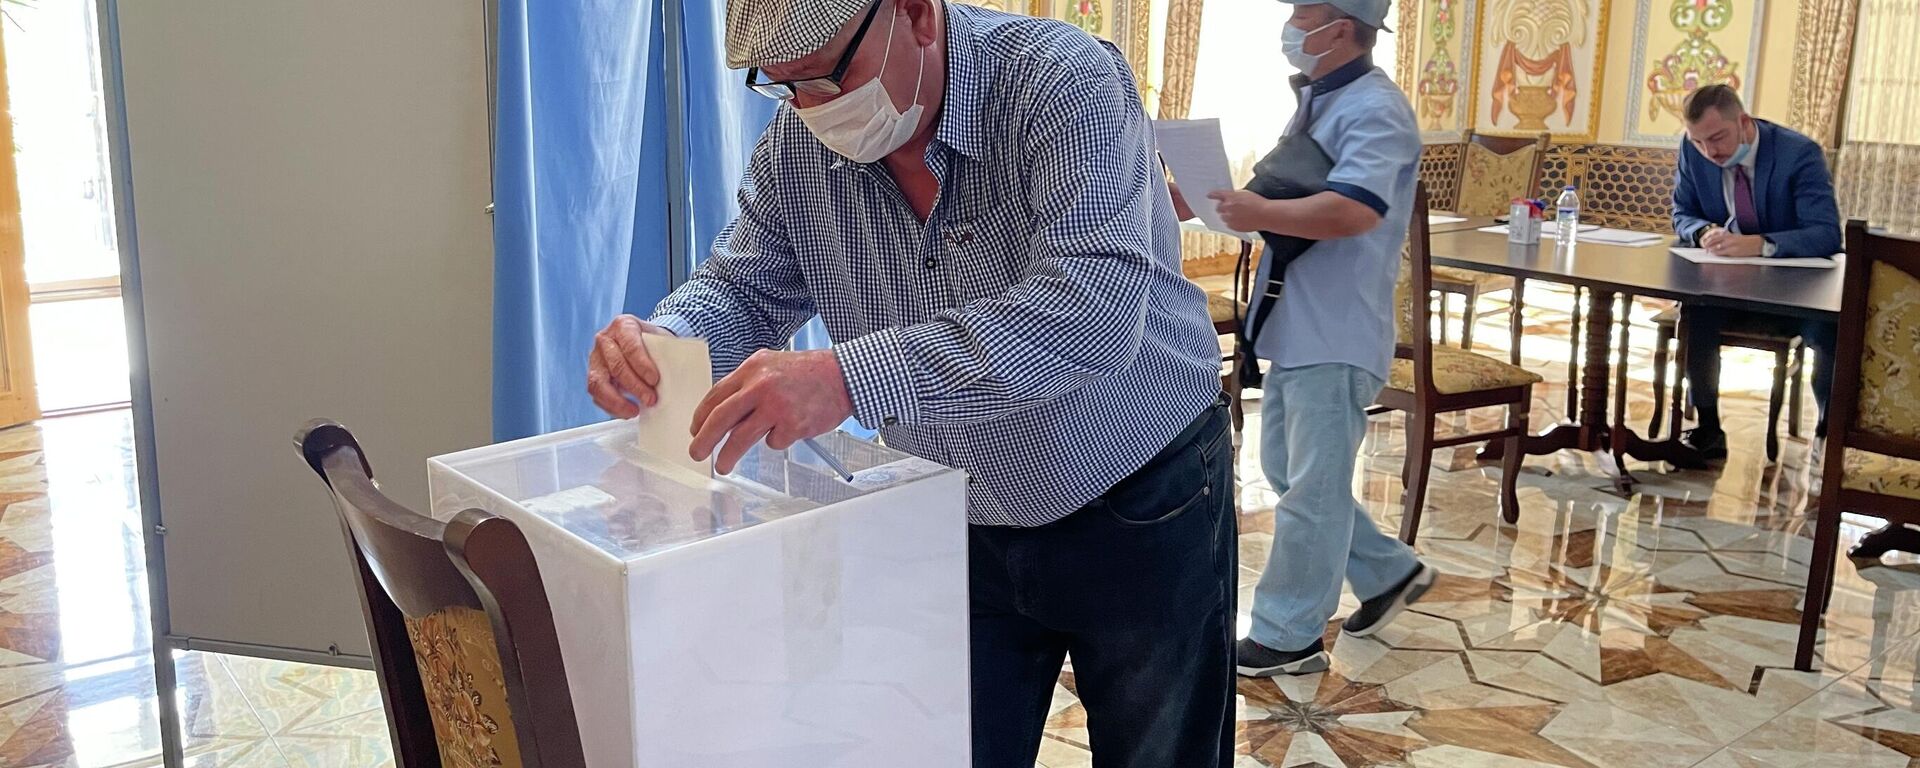 Избиратель голосует на выборах в Госдуму РФ на участке в Самарканде - Sputnik Узбекистан, 1920, 19.09.2021